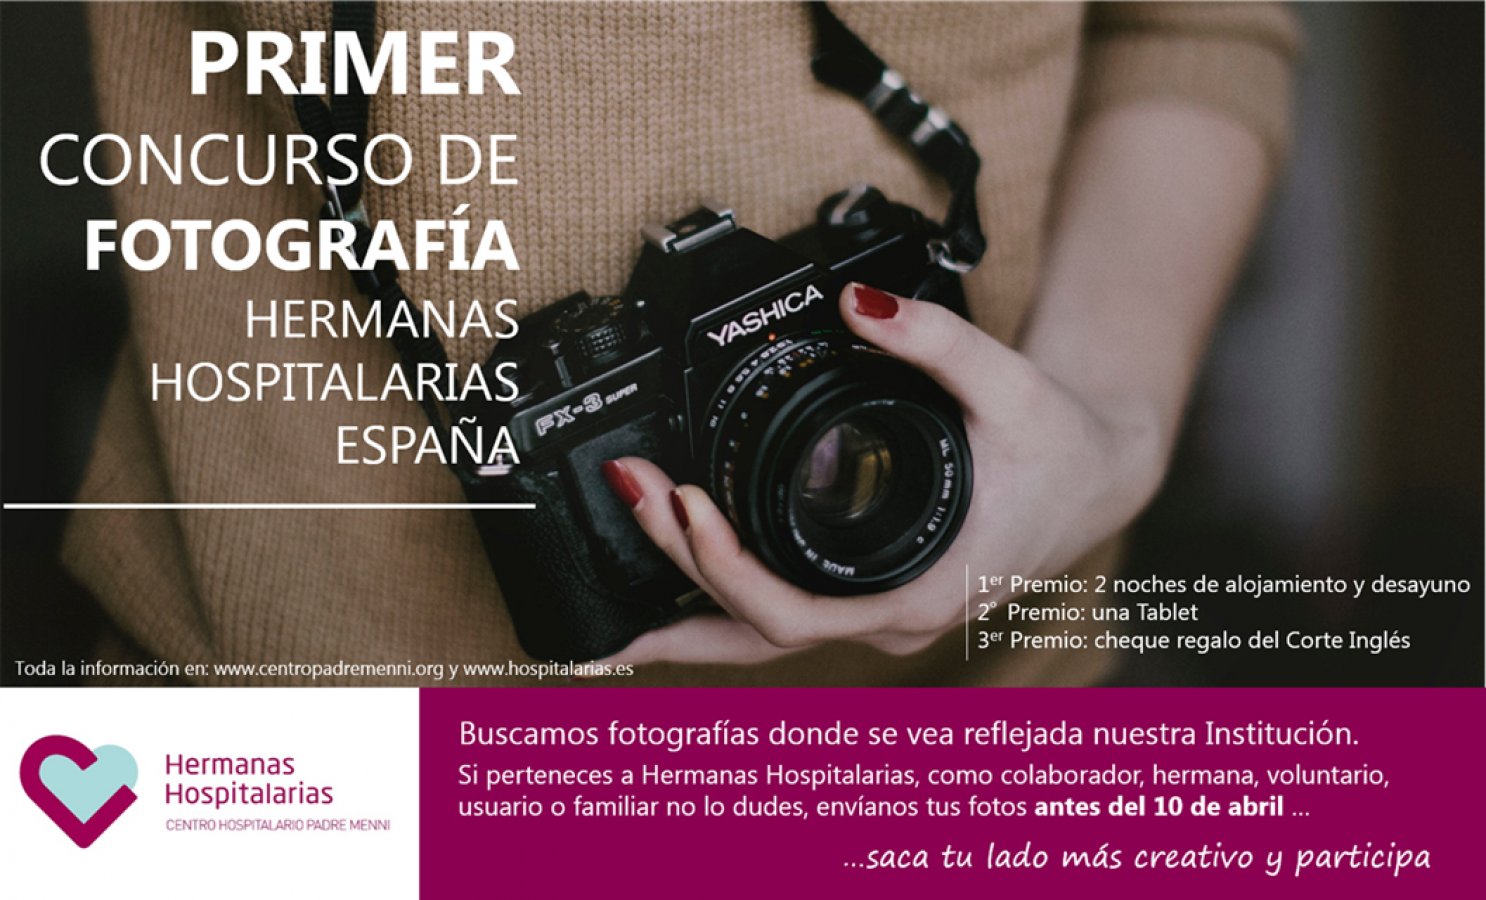 i-concurso-fotografia-hermanas-hospitalarias-espana.jpg